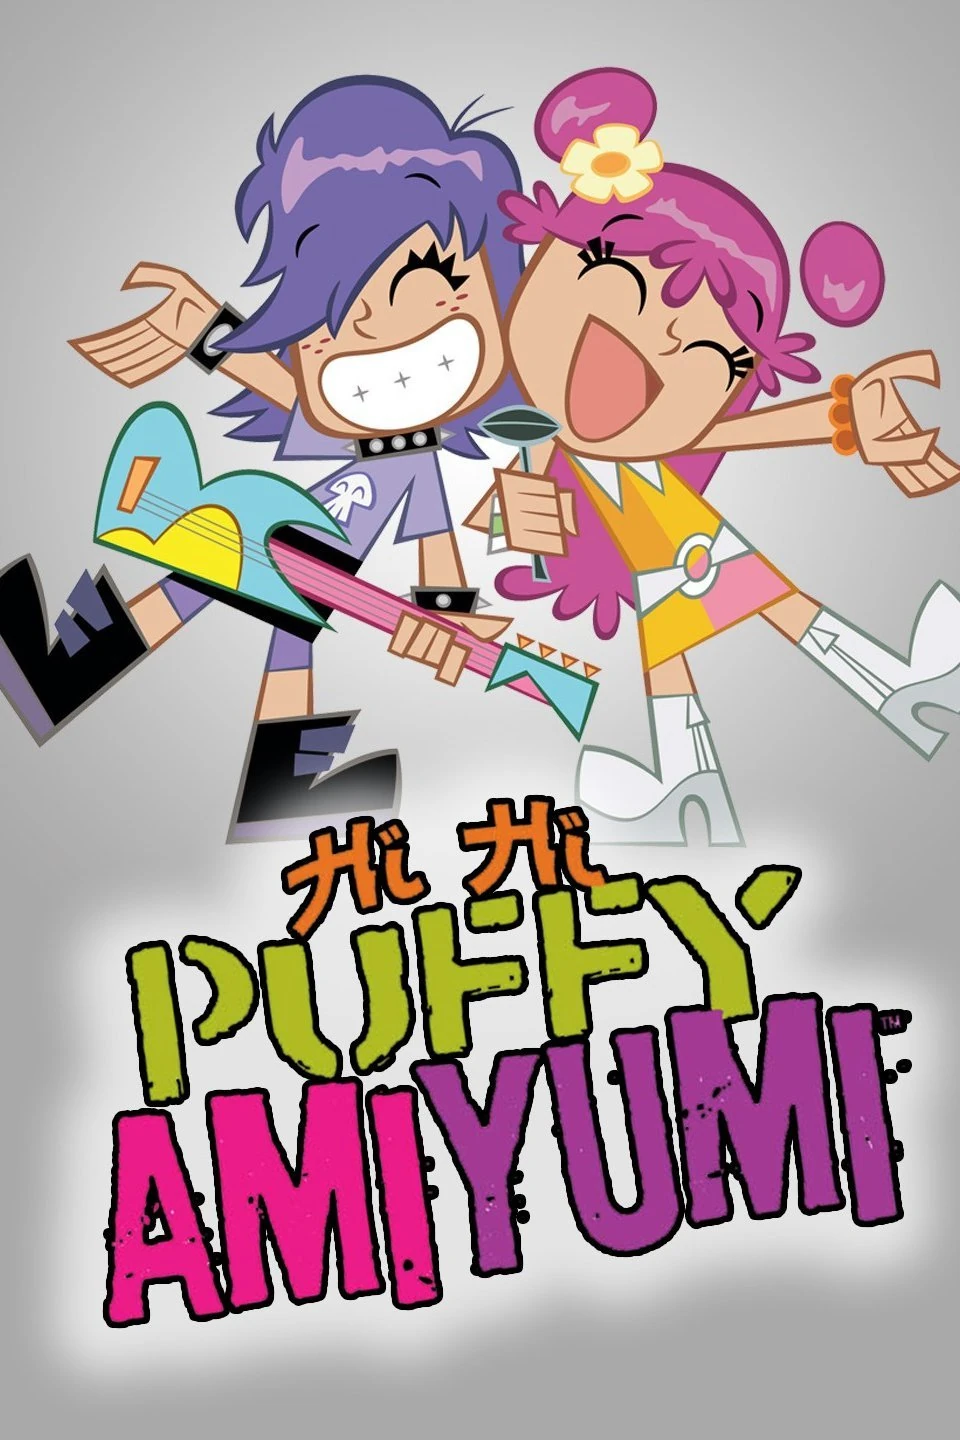 Hi Hi Puffy AmiYumi - The Big Cartoon Wiki